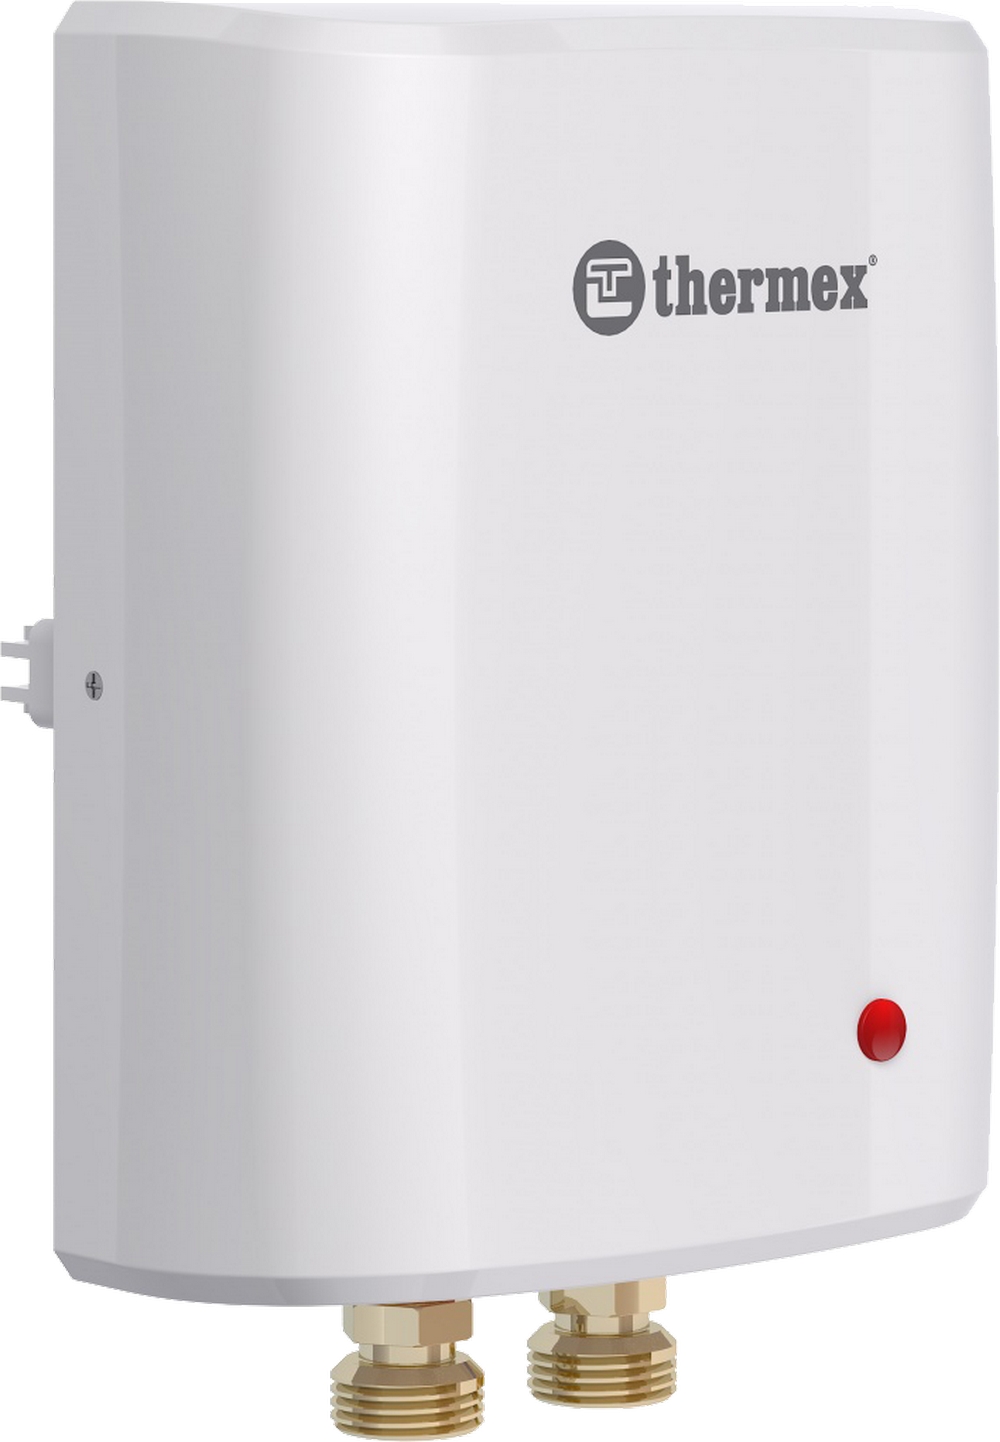 Проточный водонагреватель Thermex Surf 6000 отзывы - изображения 5